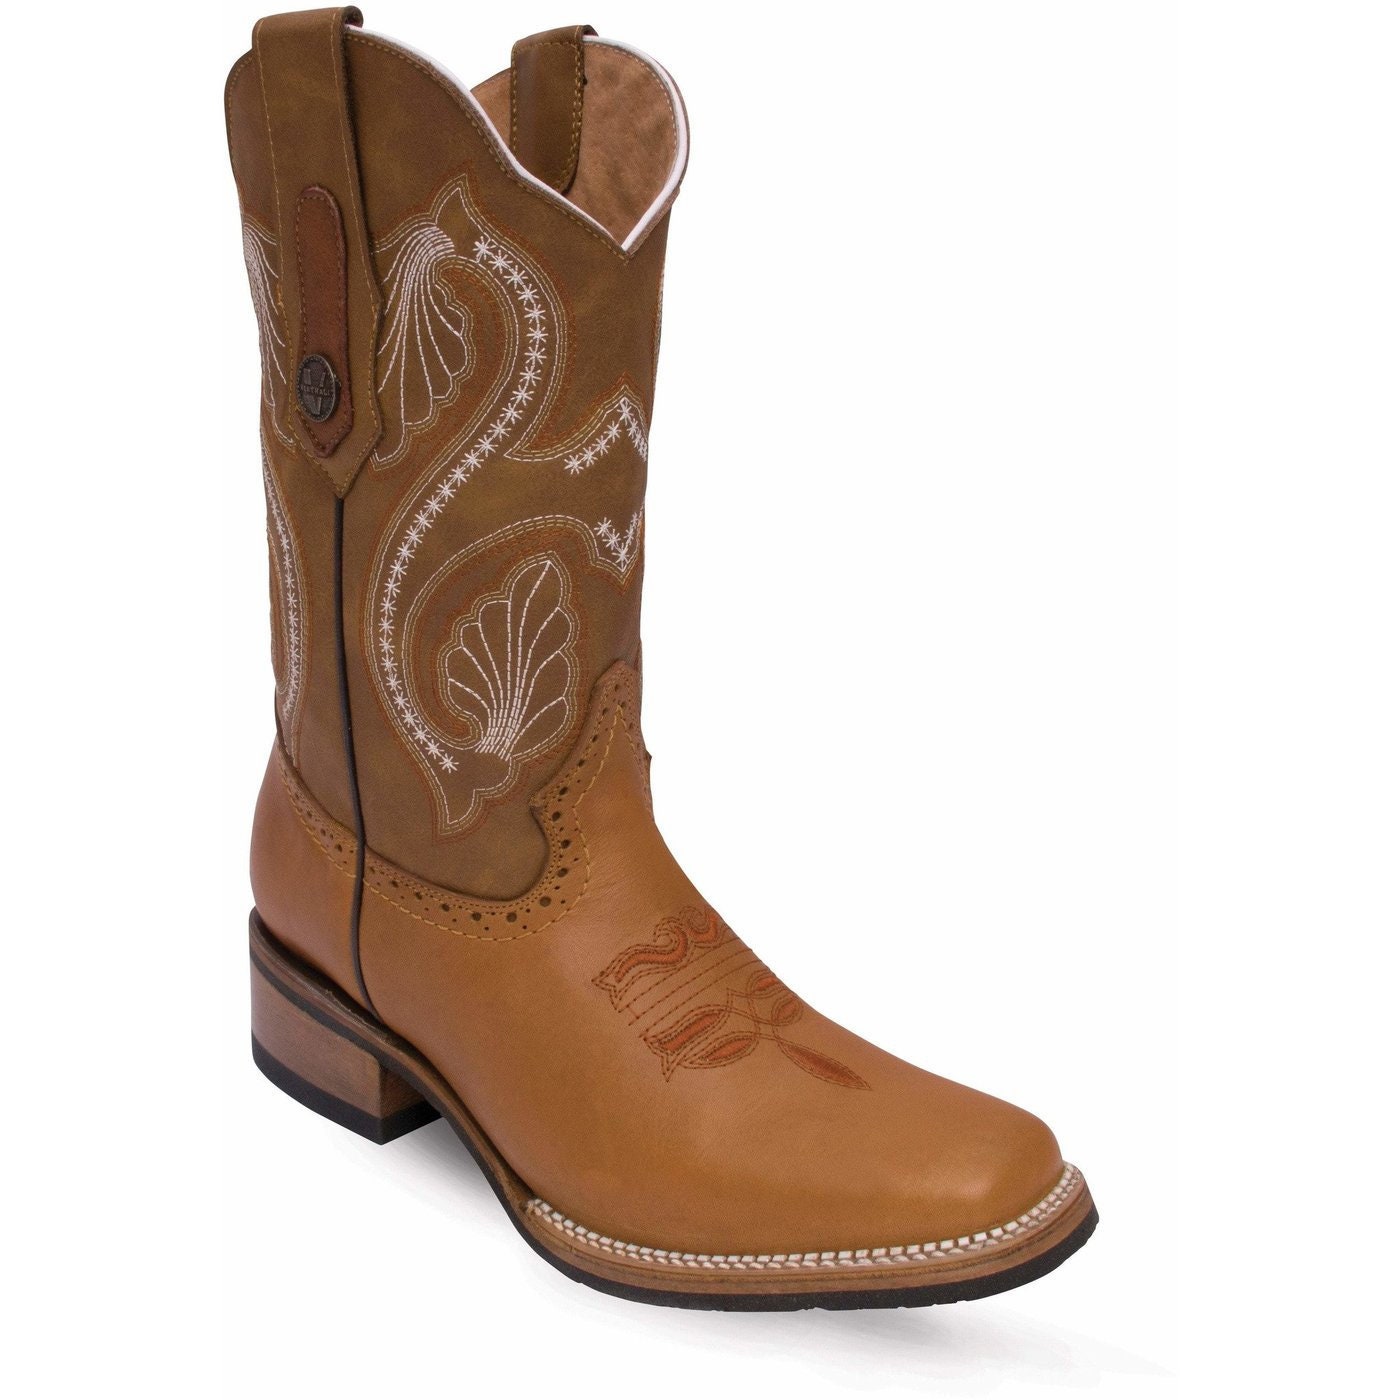 Women's Western Boots/Botas Vaqueras para Dama P110-VE193 | Etsy